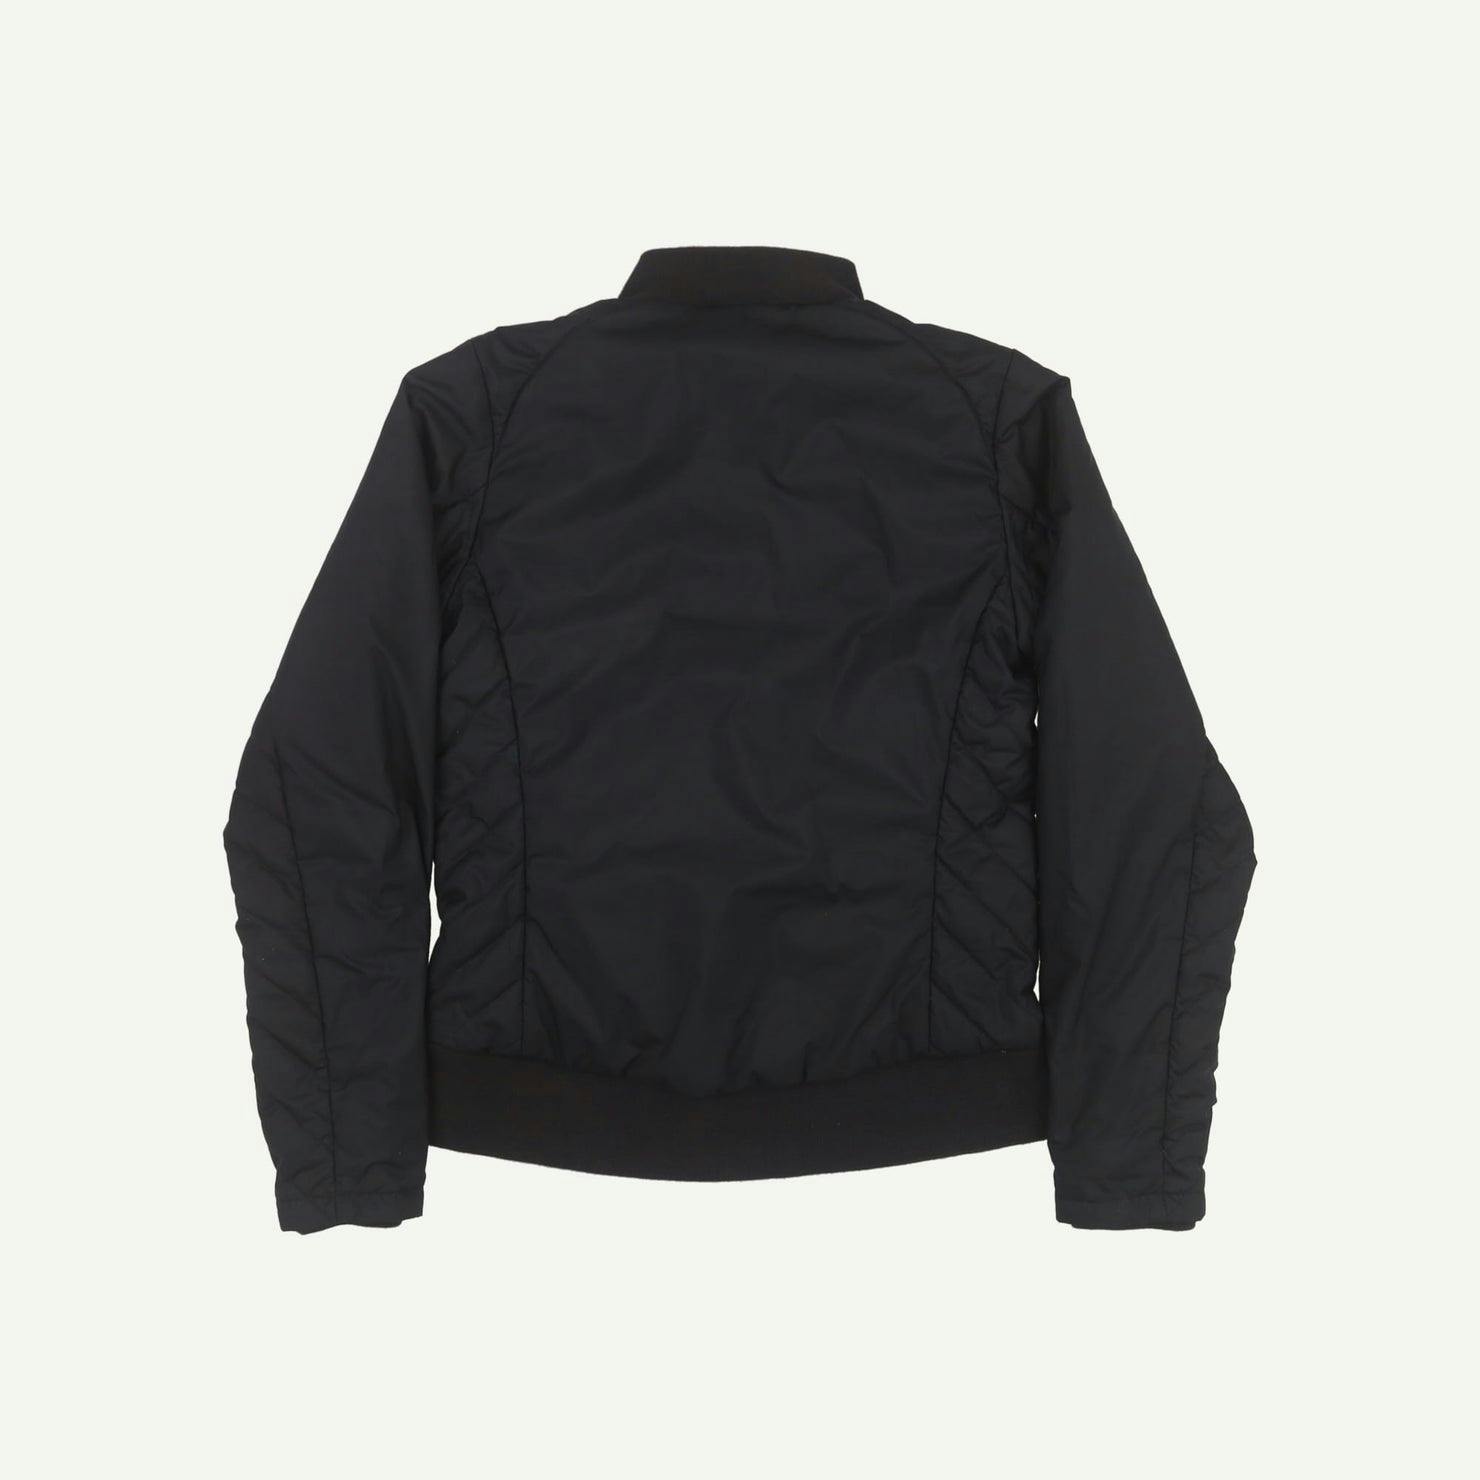 Finisterre Pre-loved Black Jacket